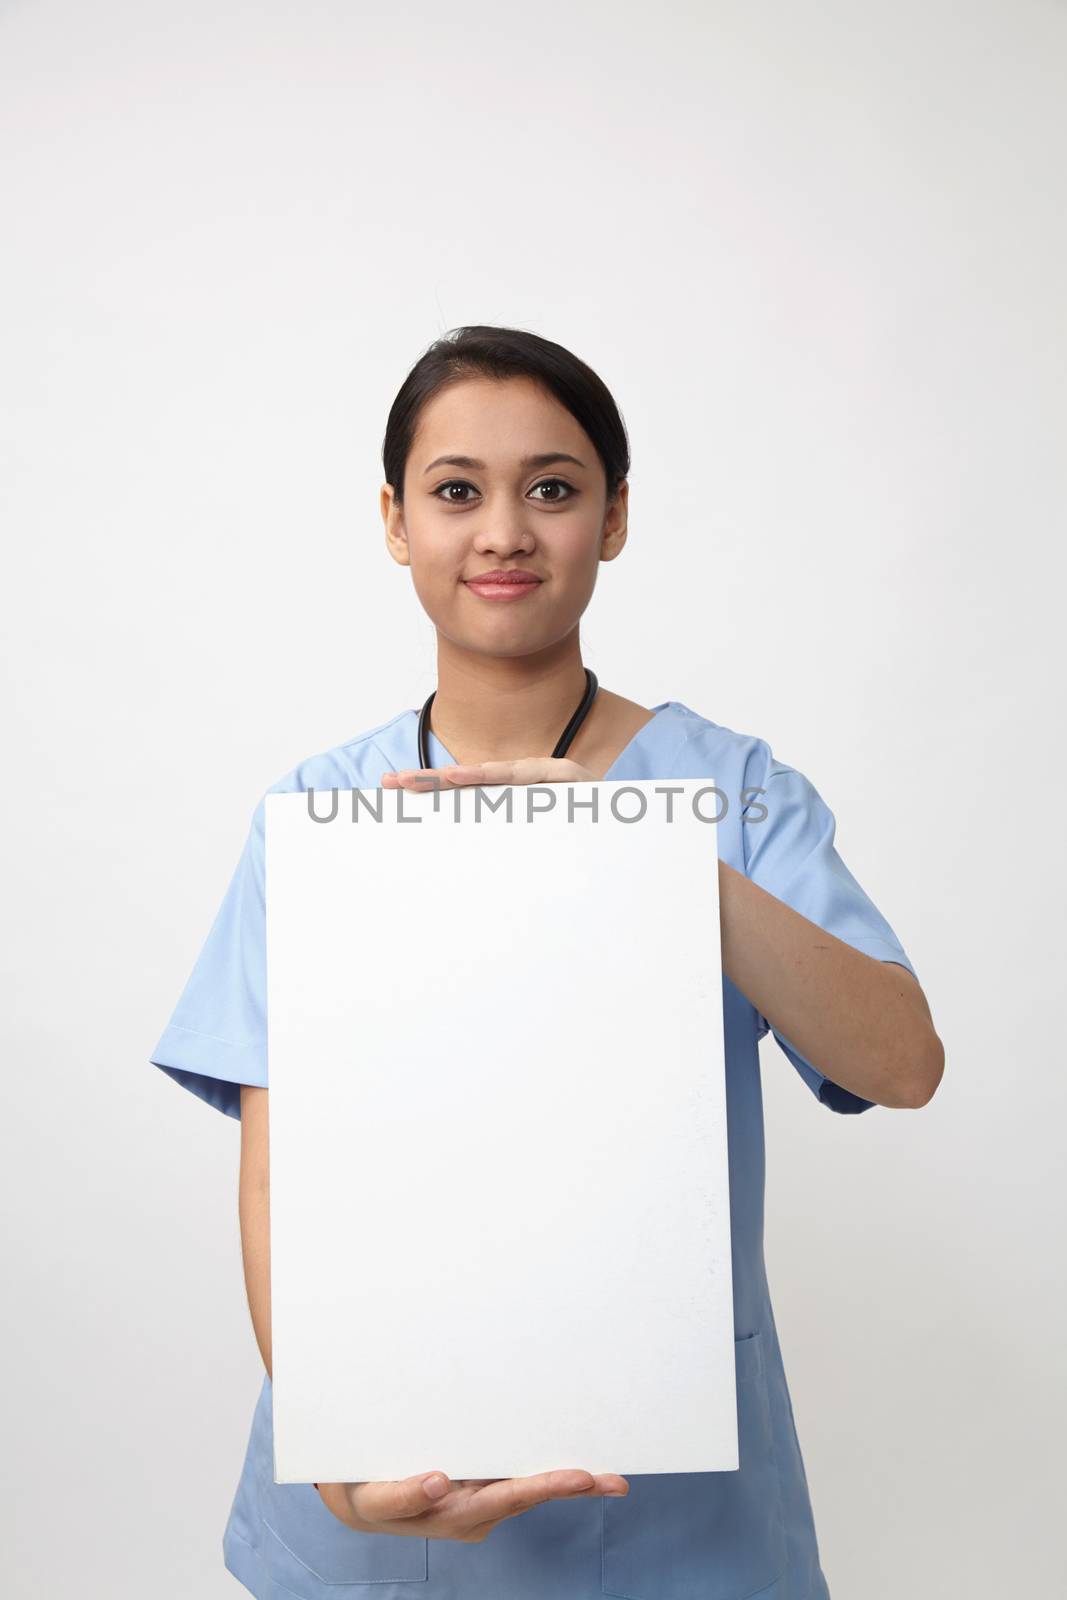 nurse holding placard by eskaylim